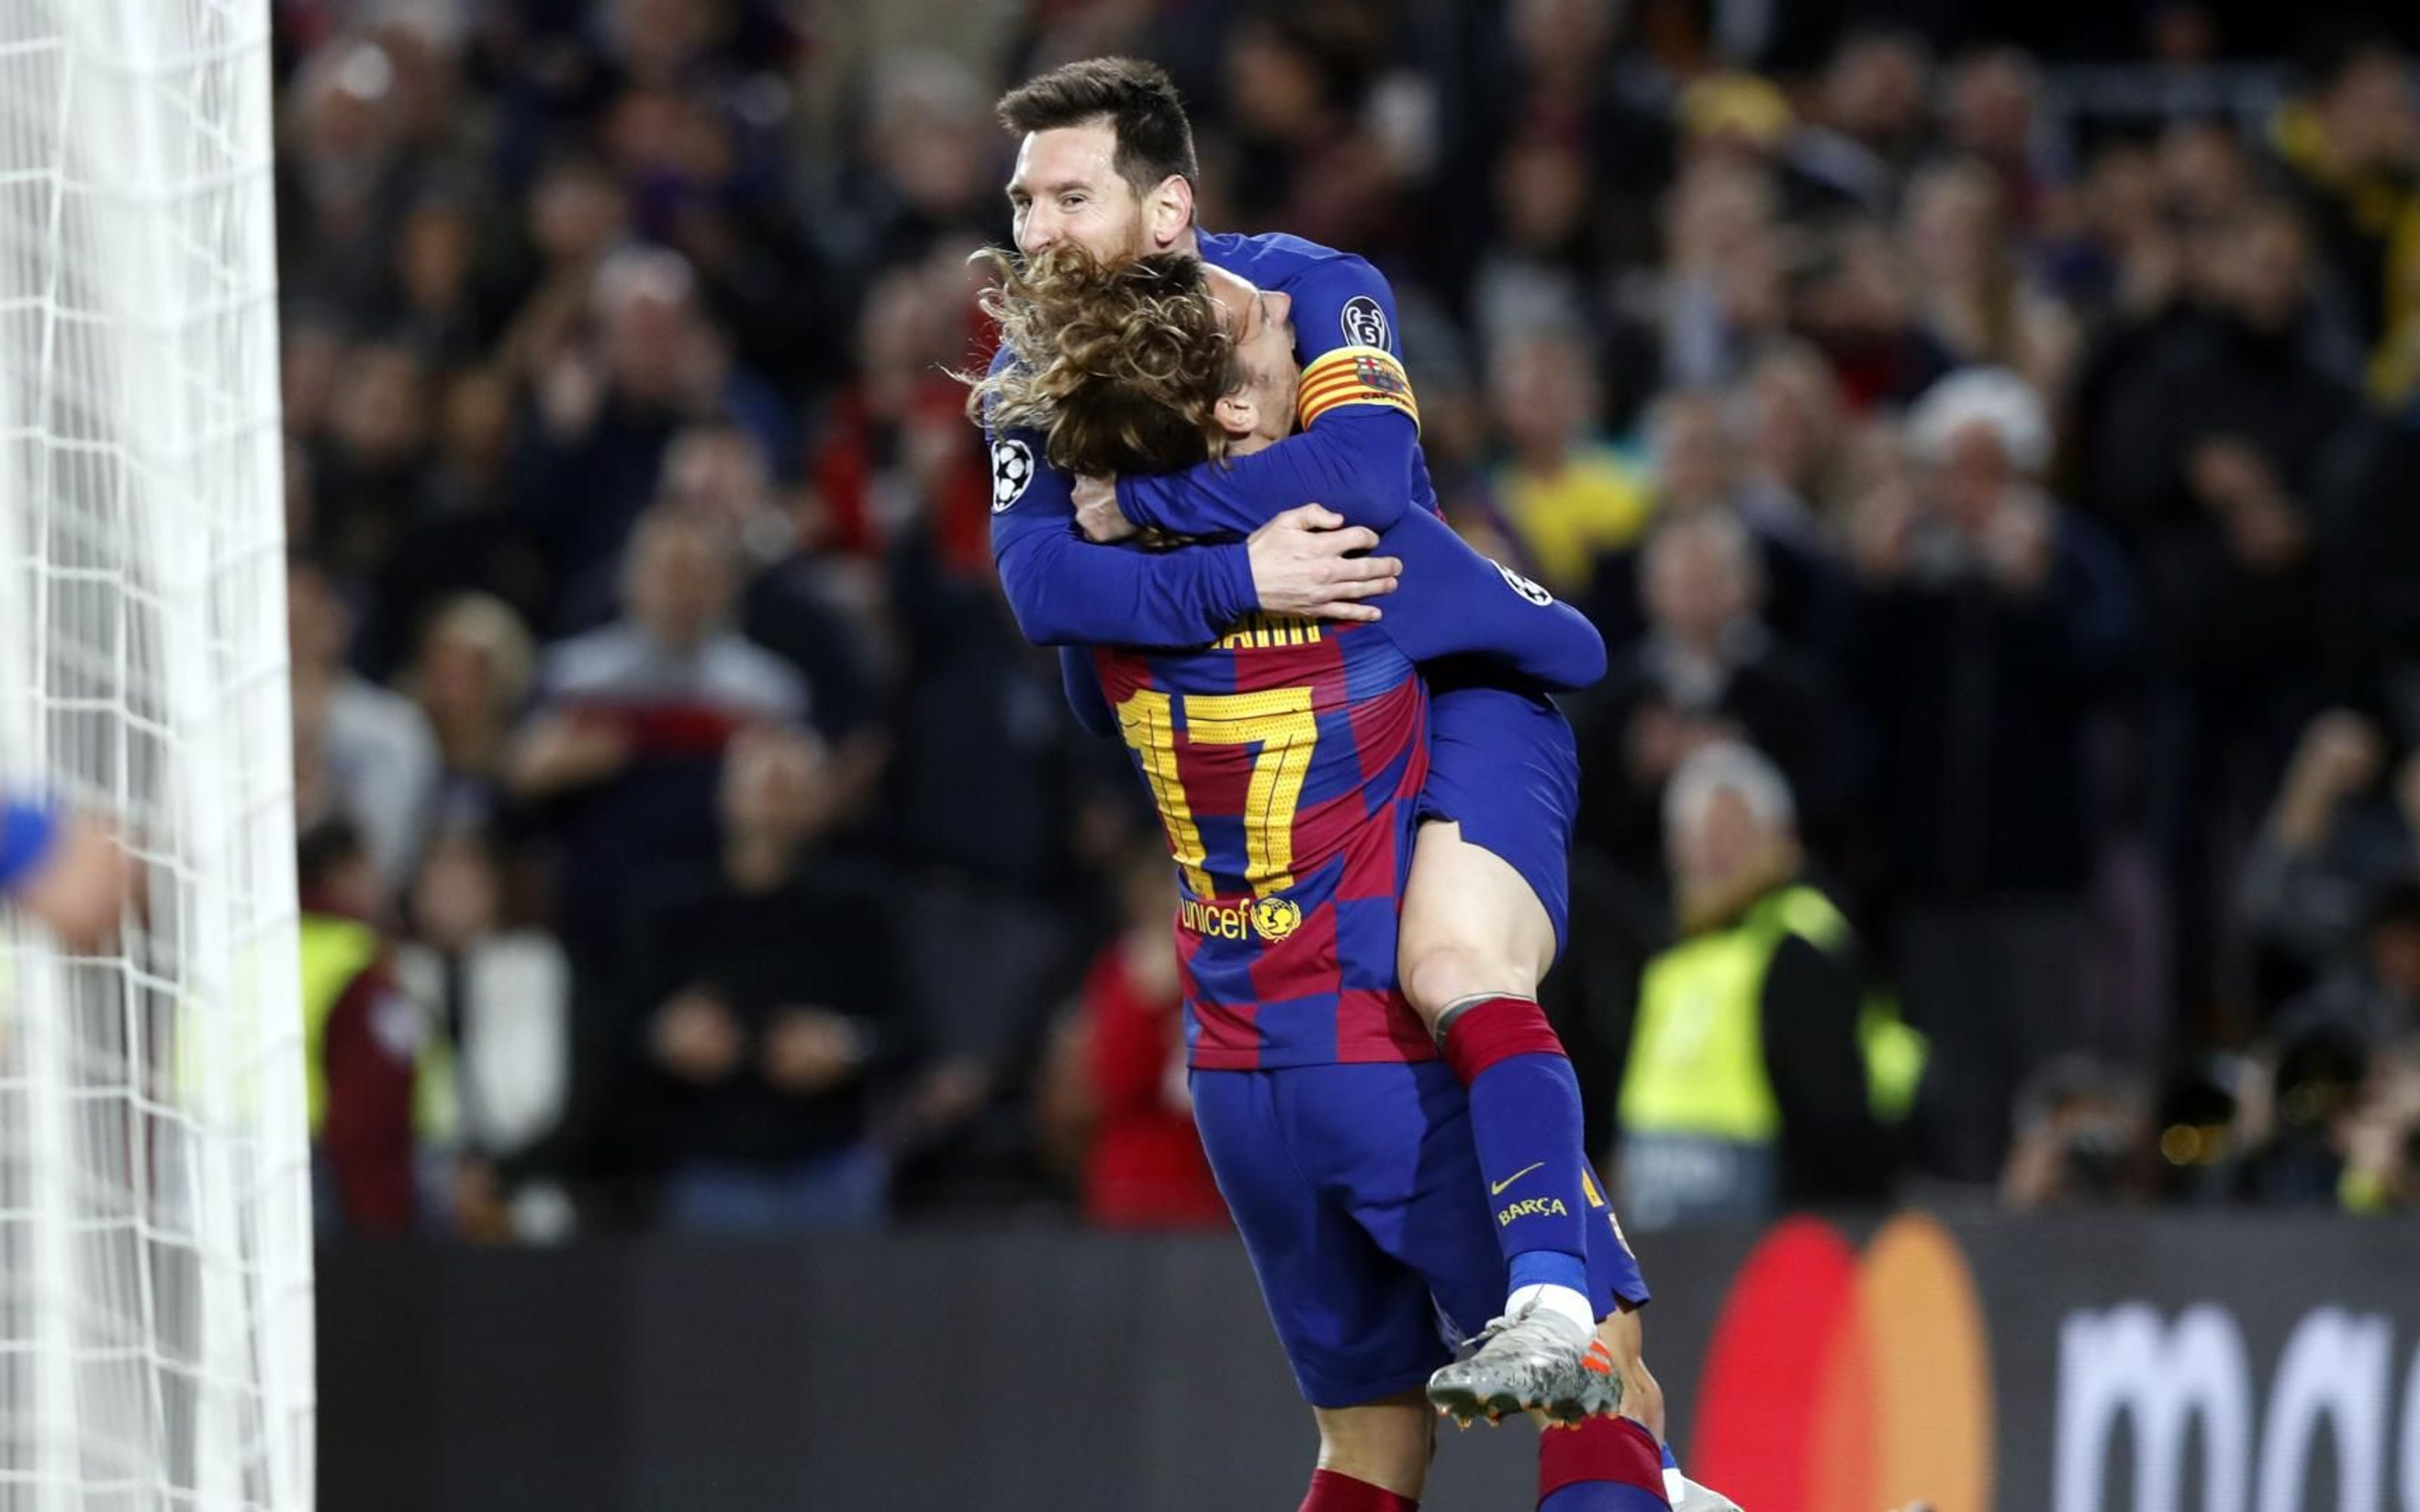 Griezmann con Leo Messi en un partido con el Barça / FC Barcelona